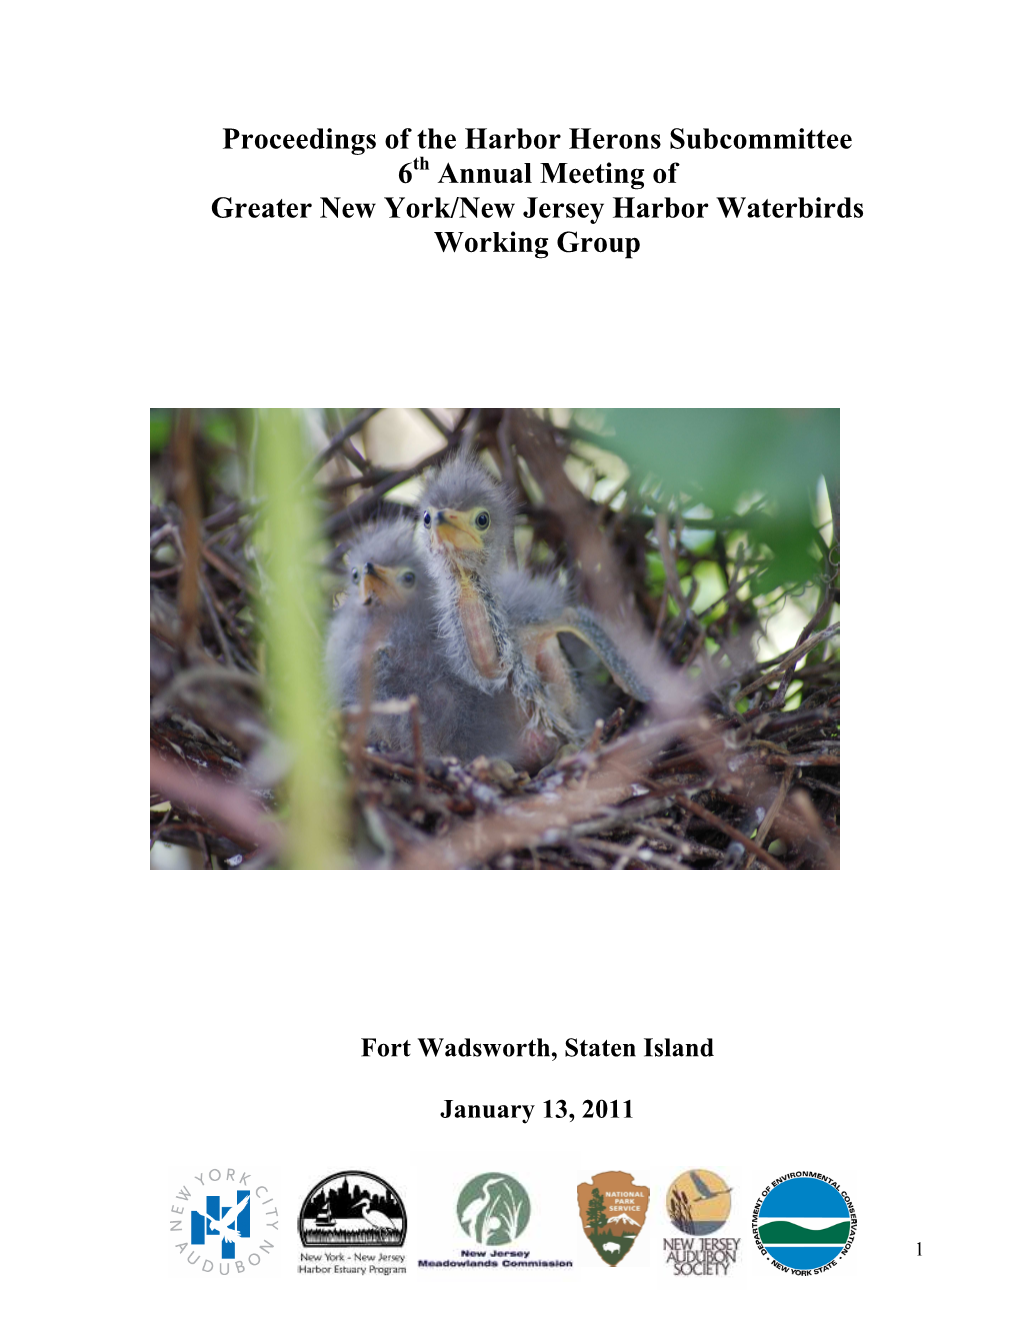 Proceedings of the Harbor Herons Annual Subcommittee Meeting